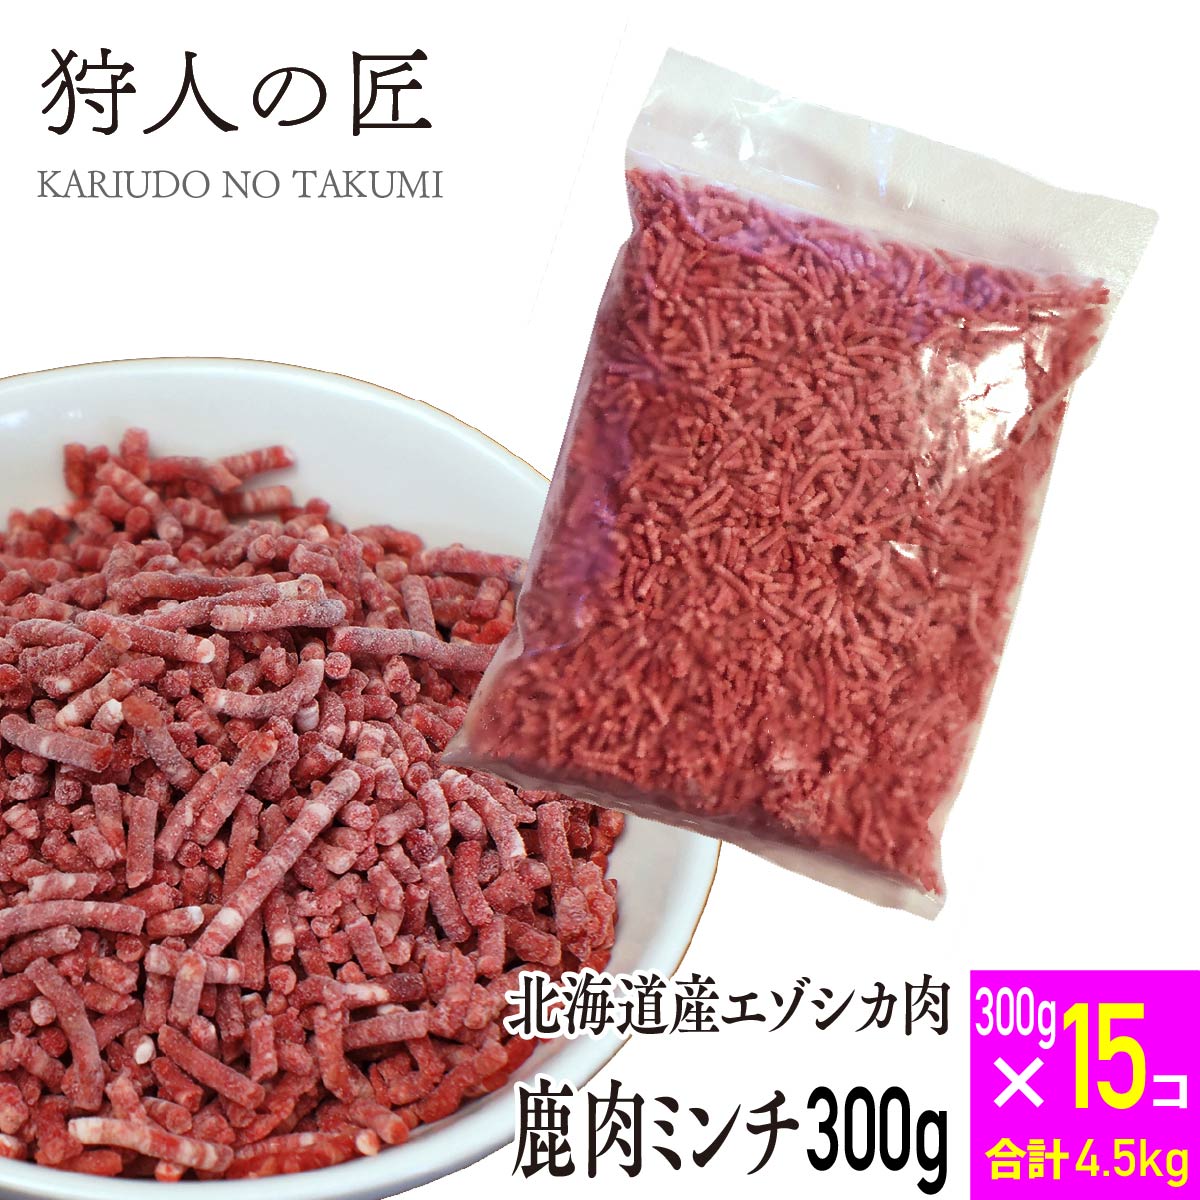 エゾ鹿肉 ミンチ (挽肉)300g x 15パックセット